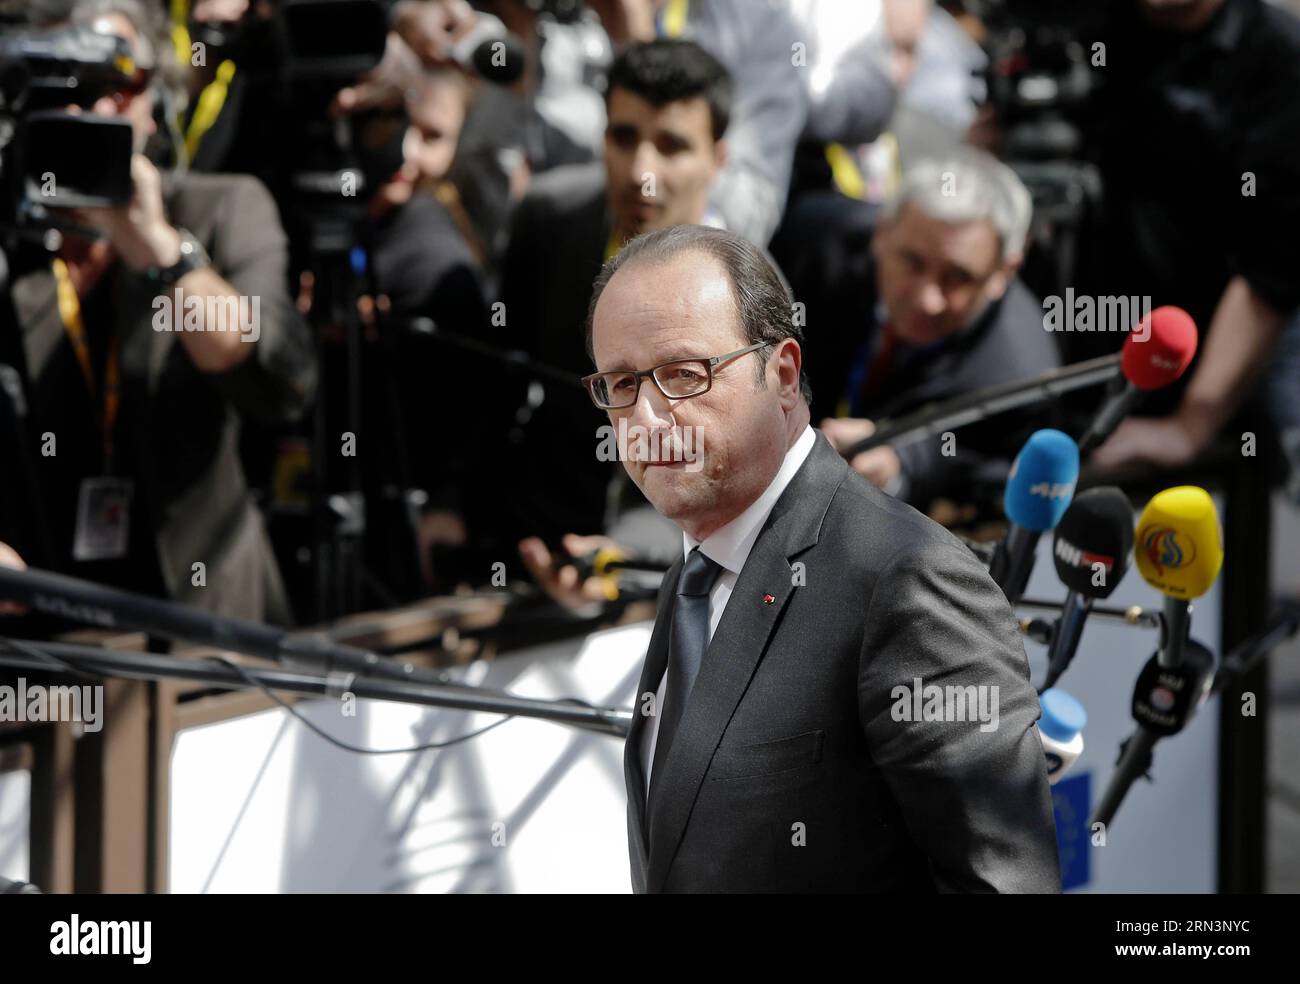 (15423) -- BRUXELLES, le 23 avril 2015 -- le président français François Hollande arrive au sommet extraordinaire de l'Union européenne (UE) pour discuter de la manière de faire face aux pressions migratoires en Méditerranée au siège de l'UE à Bruxelles, en Belgique, le 23 avril 2015. Seuls 28 migrants sur 700 semblent avoir survécu de loin après que leur bateau ait chaviré à quelque 120 miles au sud de Lampedusa, en Italie, samedi soir. ZHOU LEI) BELGIQUE-UE-SOMMET EXTRAORDINAIRE-TRAGÉDIE DES MIGRANTS ?? PUBLICATIONxNOTxINxCHN Bruxelles avril 23 2015 le président français François Hollande arrive À l'Union européenne extraordinaire S de l'UE Banque D'Images